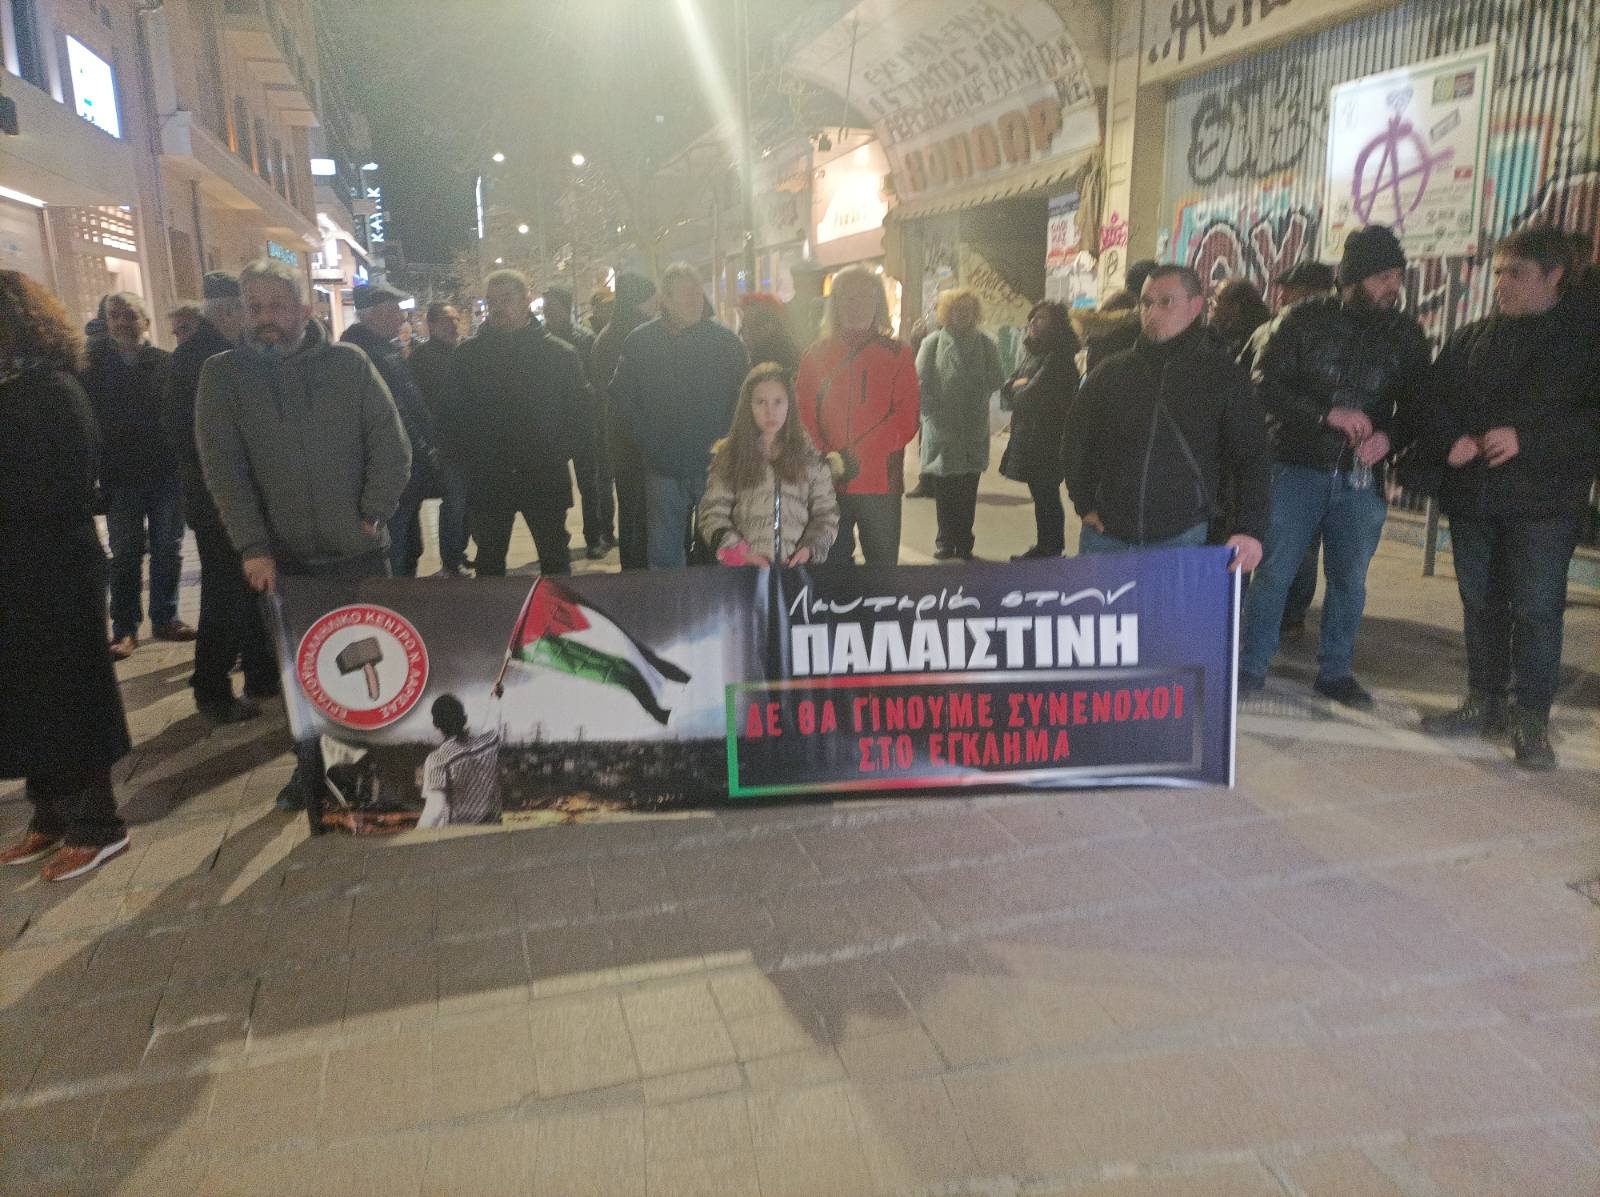 Λάρισα: Διαδήλωση και πορεία υπέρ του Παλαιστινιακού λαού